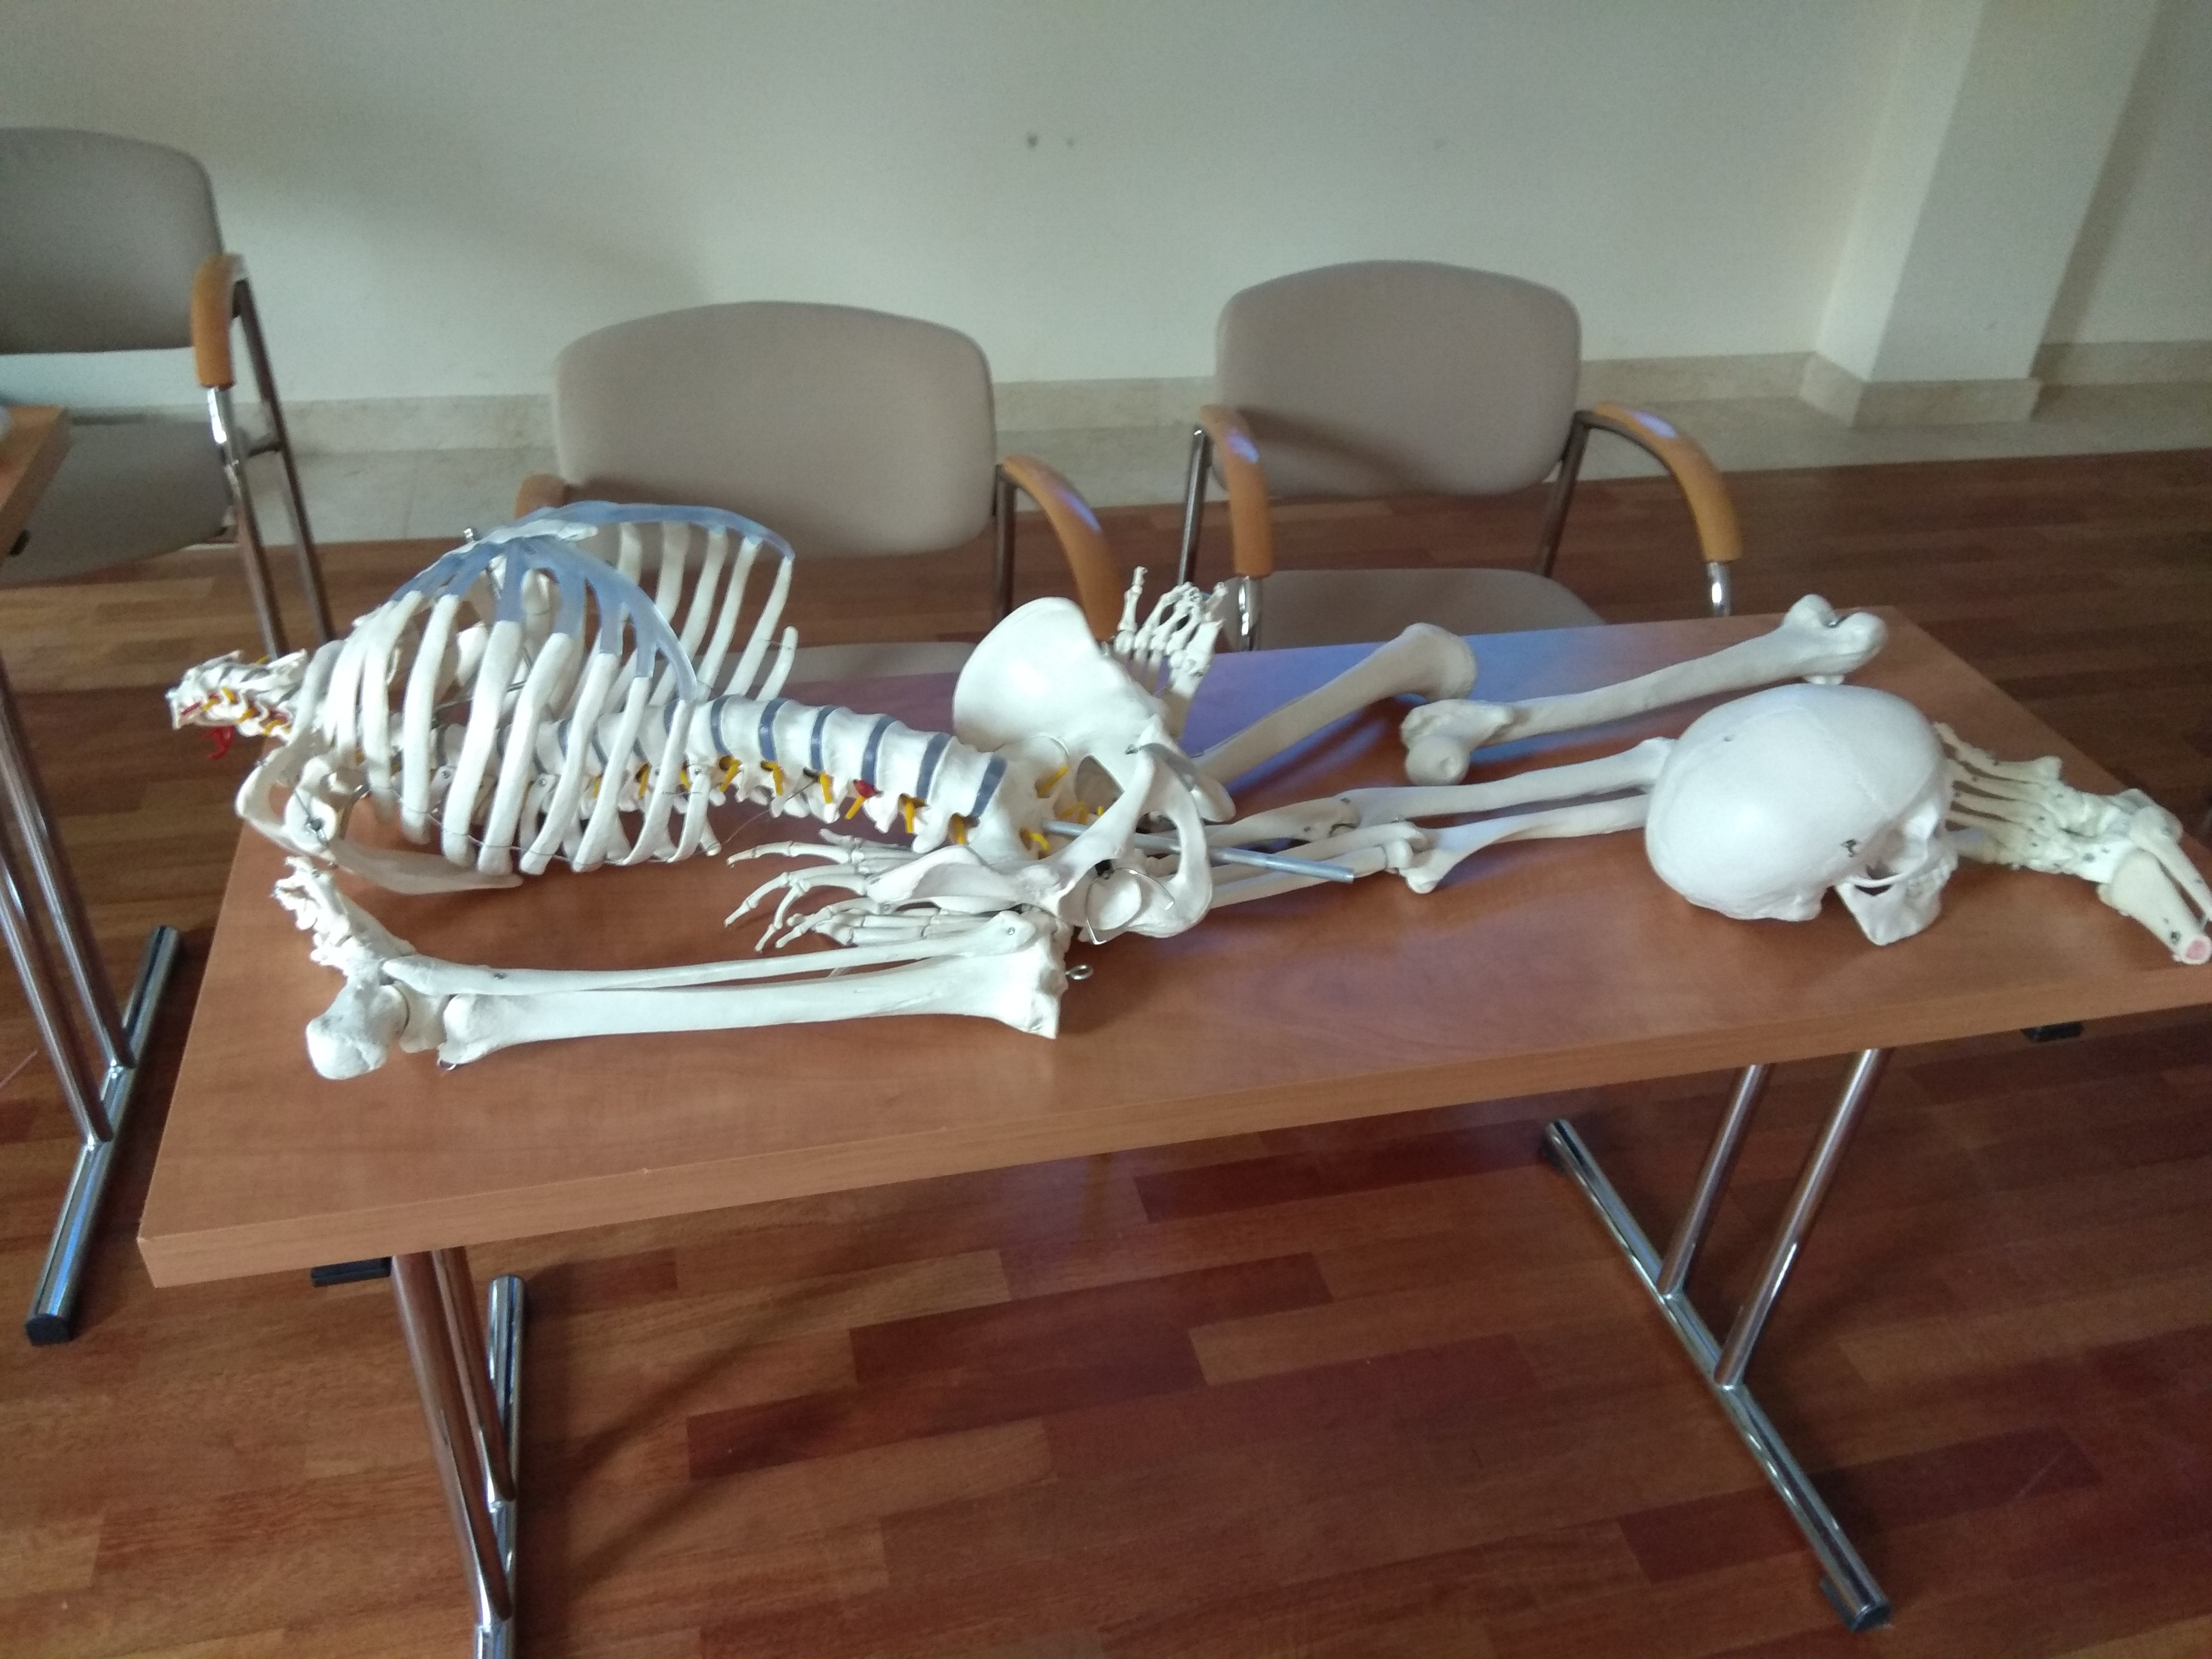 Prostokątny stół z jasnobrązowym blatem i metalowymi nogami. Na nim leży model ludzkiego szkieletu, czaszka leży oddzielnie, bliżej kończyn dolnych.